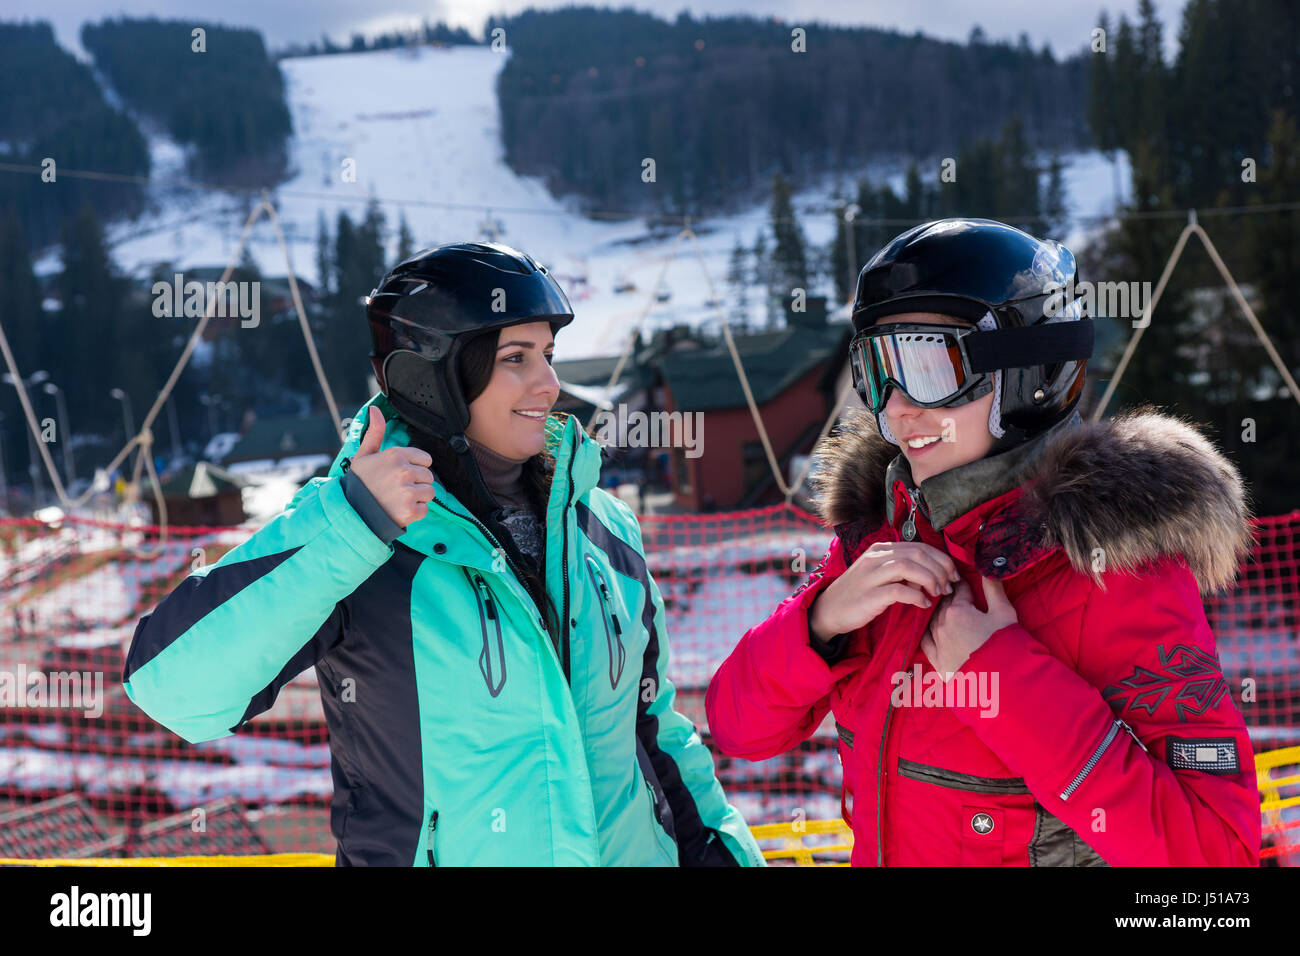 Junge Frauen in Ski-Anzüge, Helme und Skibrillen stehend in einem Skigebiet im Winter Stockfoto